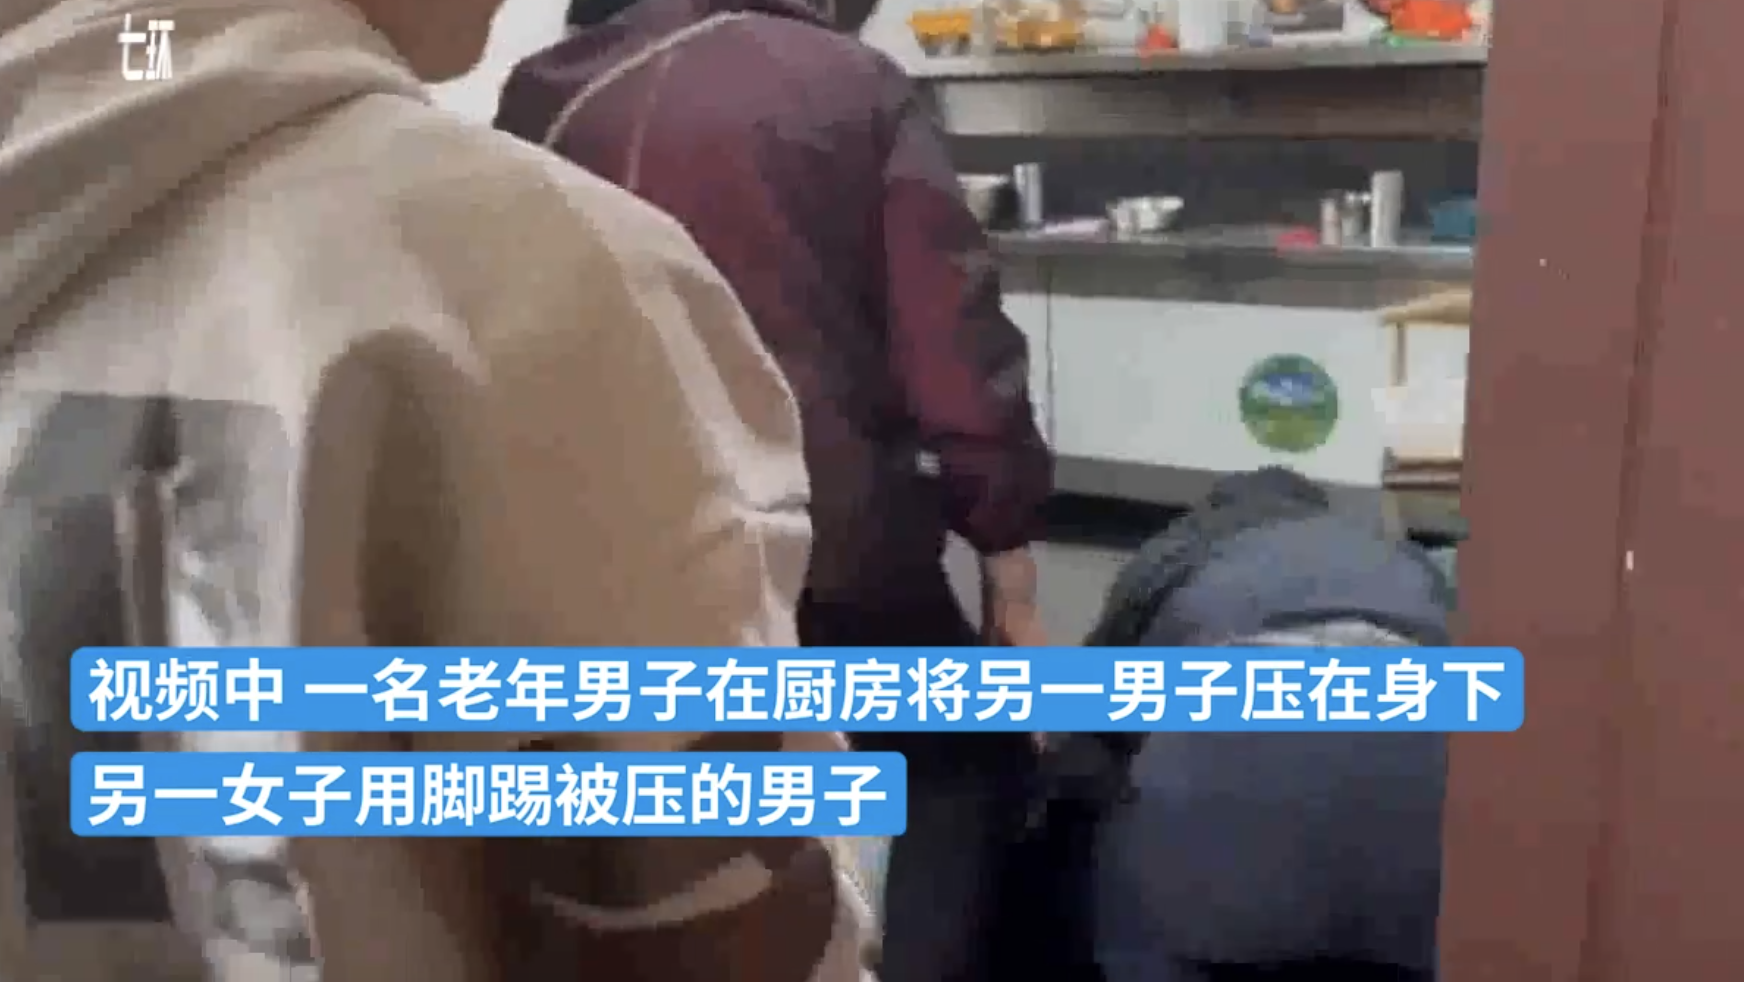 安徽滁州一桌顾客因嫌上菜慢 冲进厨房殴打厨师